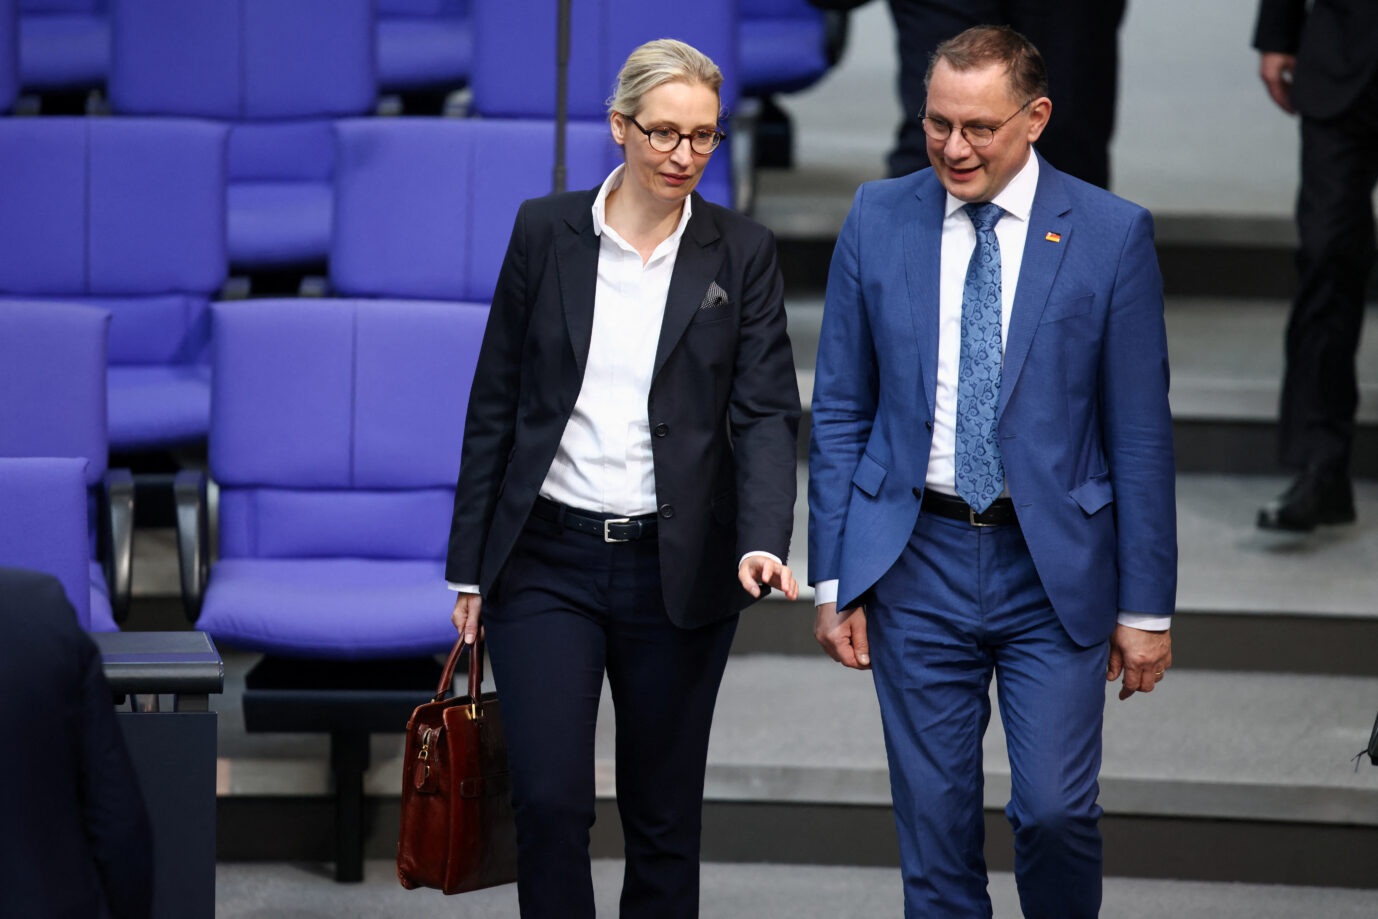 Die AfD-Vorsitzenden Alice Weidel und Tino Chrupalla laufen im Rednersaal des Bundestag umher und lächeln